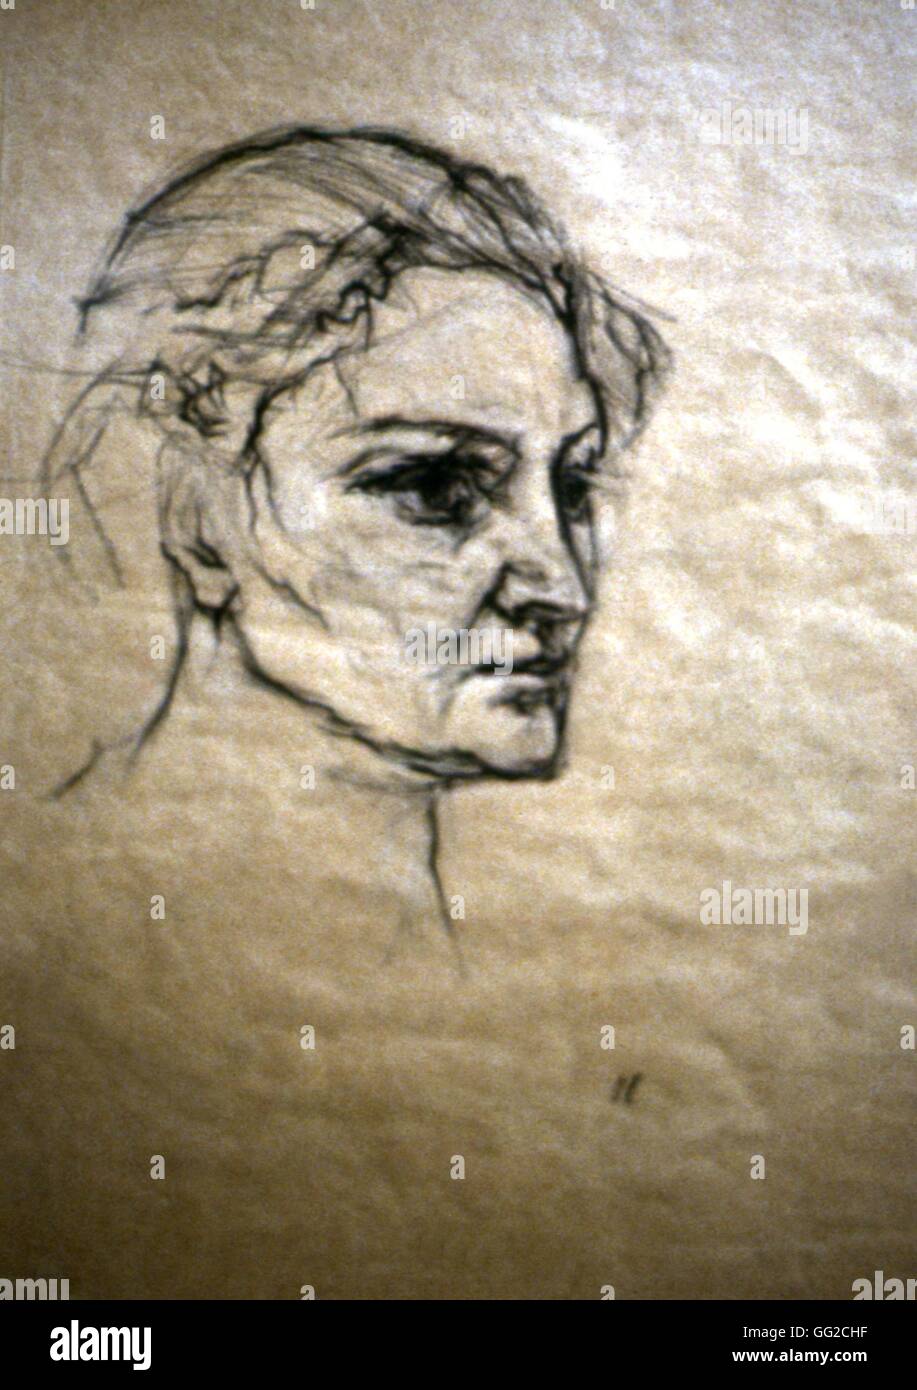 Oskar Kokoschka école autrichienne Portrait d'Alma Mahler c.1913 craie noire sur papier (39,2 x 31,5 cm) Edimbourg, National Gallery of Scotland Banque D'Images